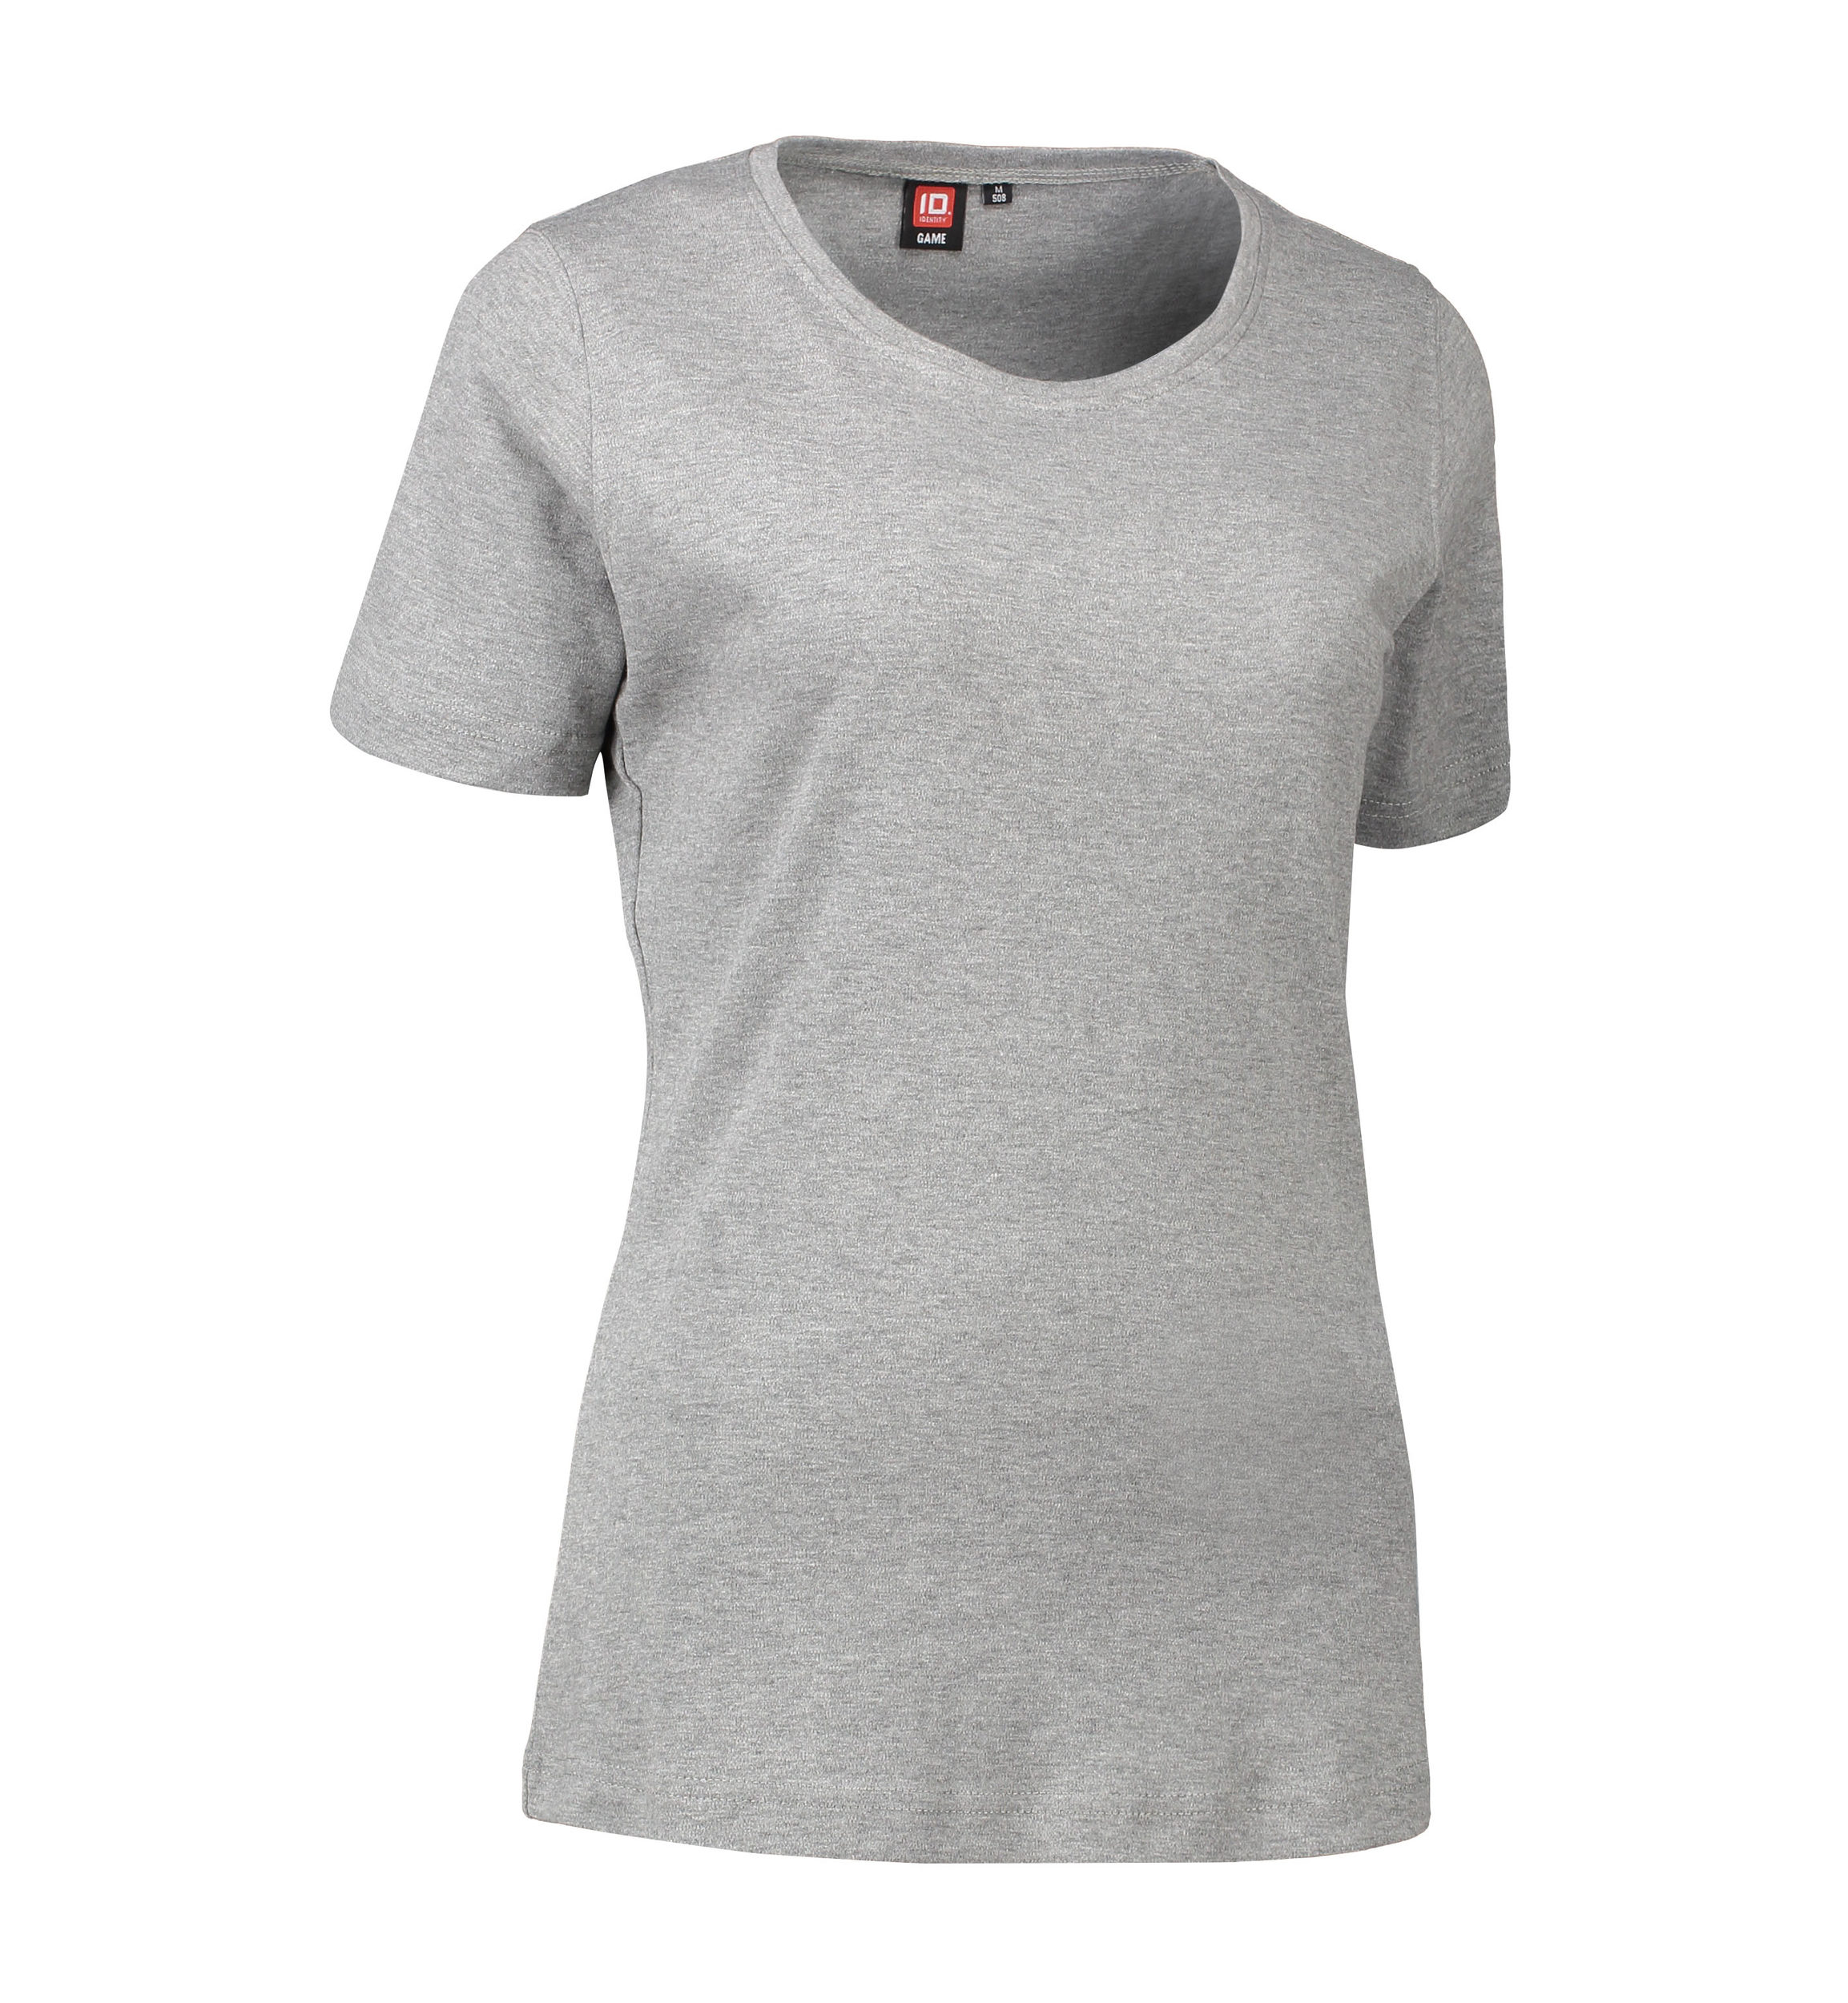 Billede af Dame t-shirt med rund hals i grå - 3XL hos Sygeplejebutikken.dk